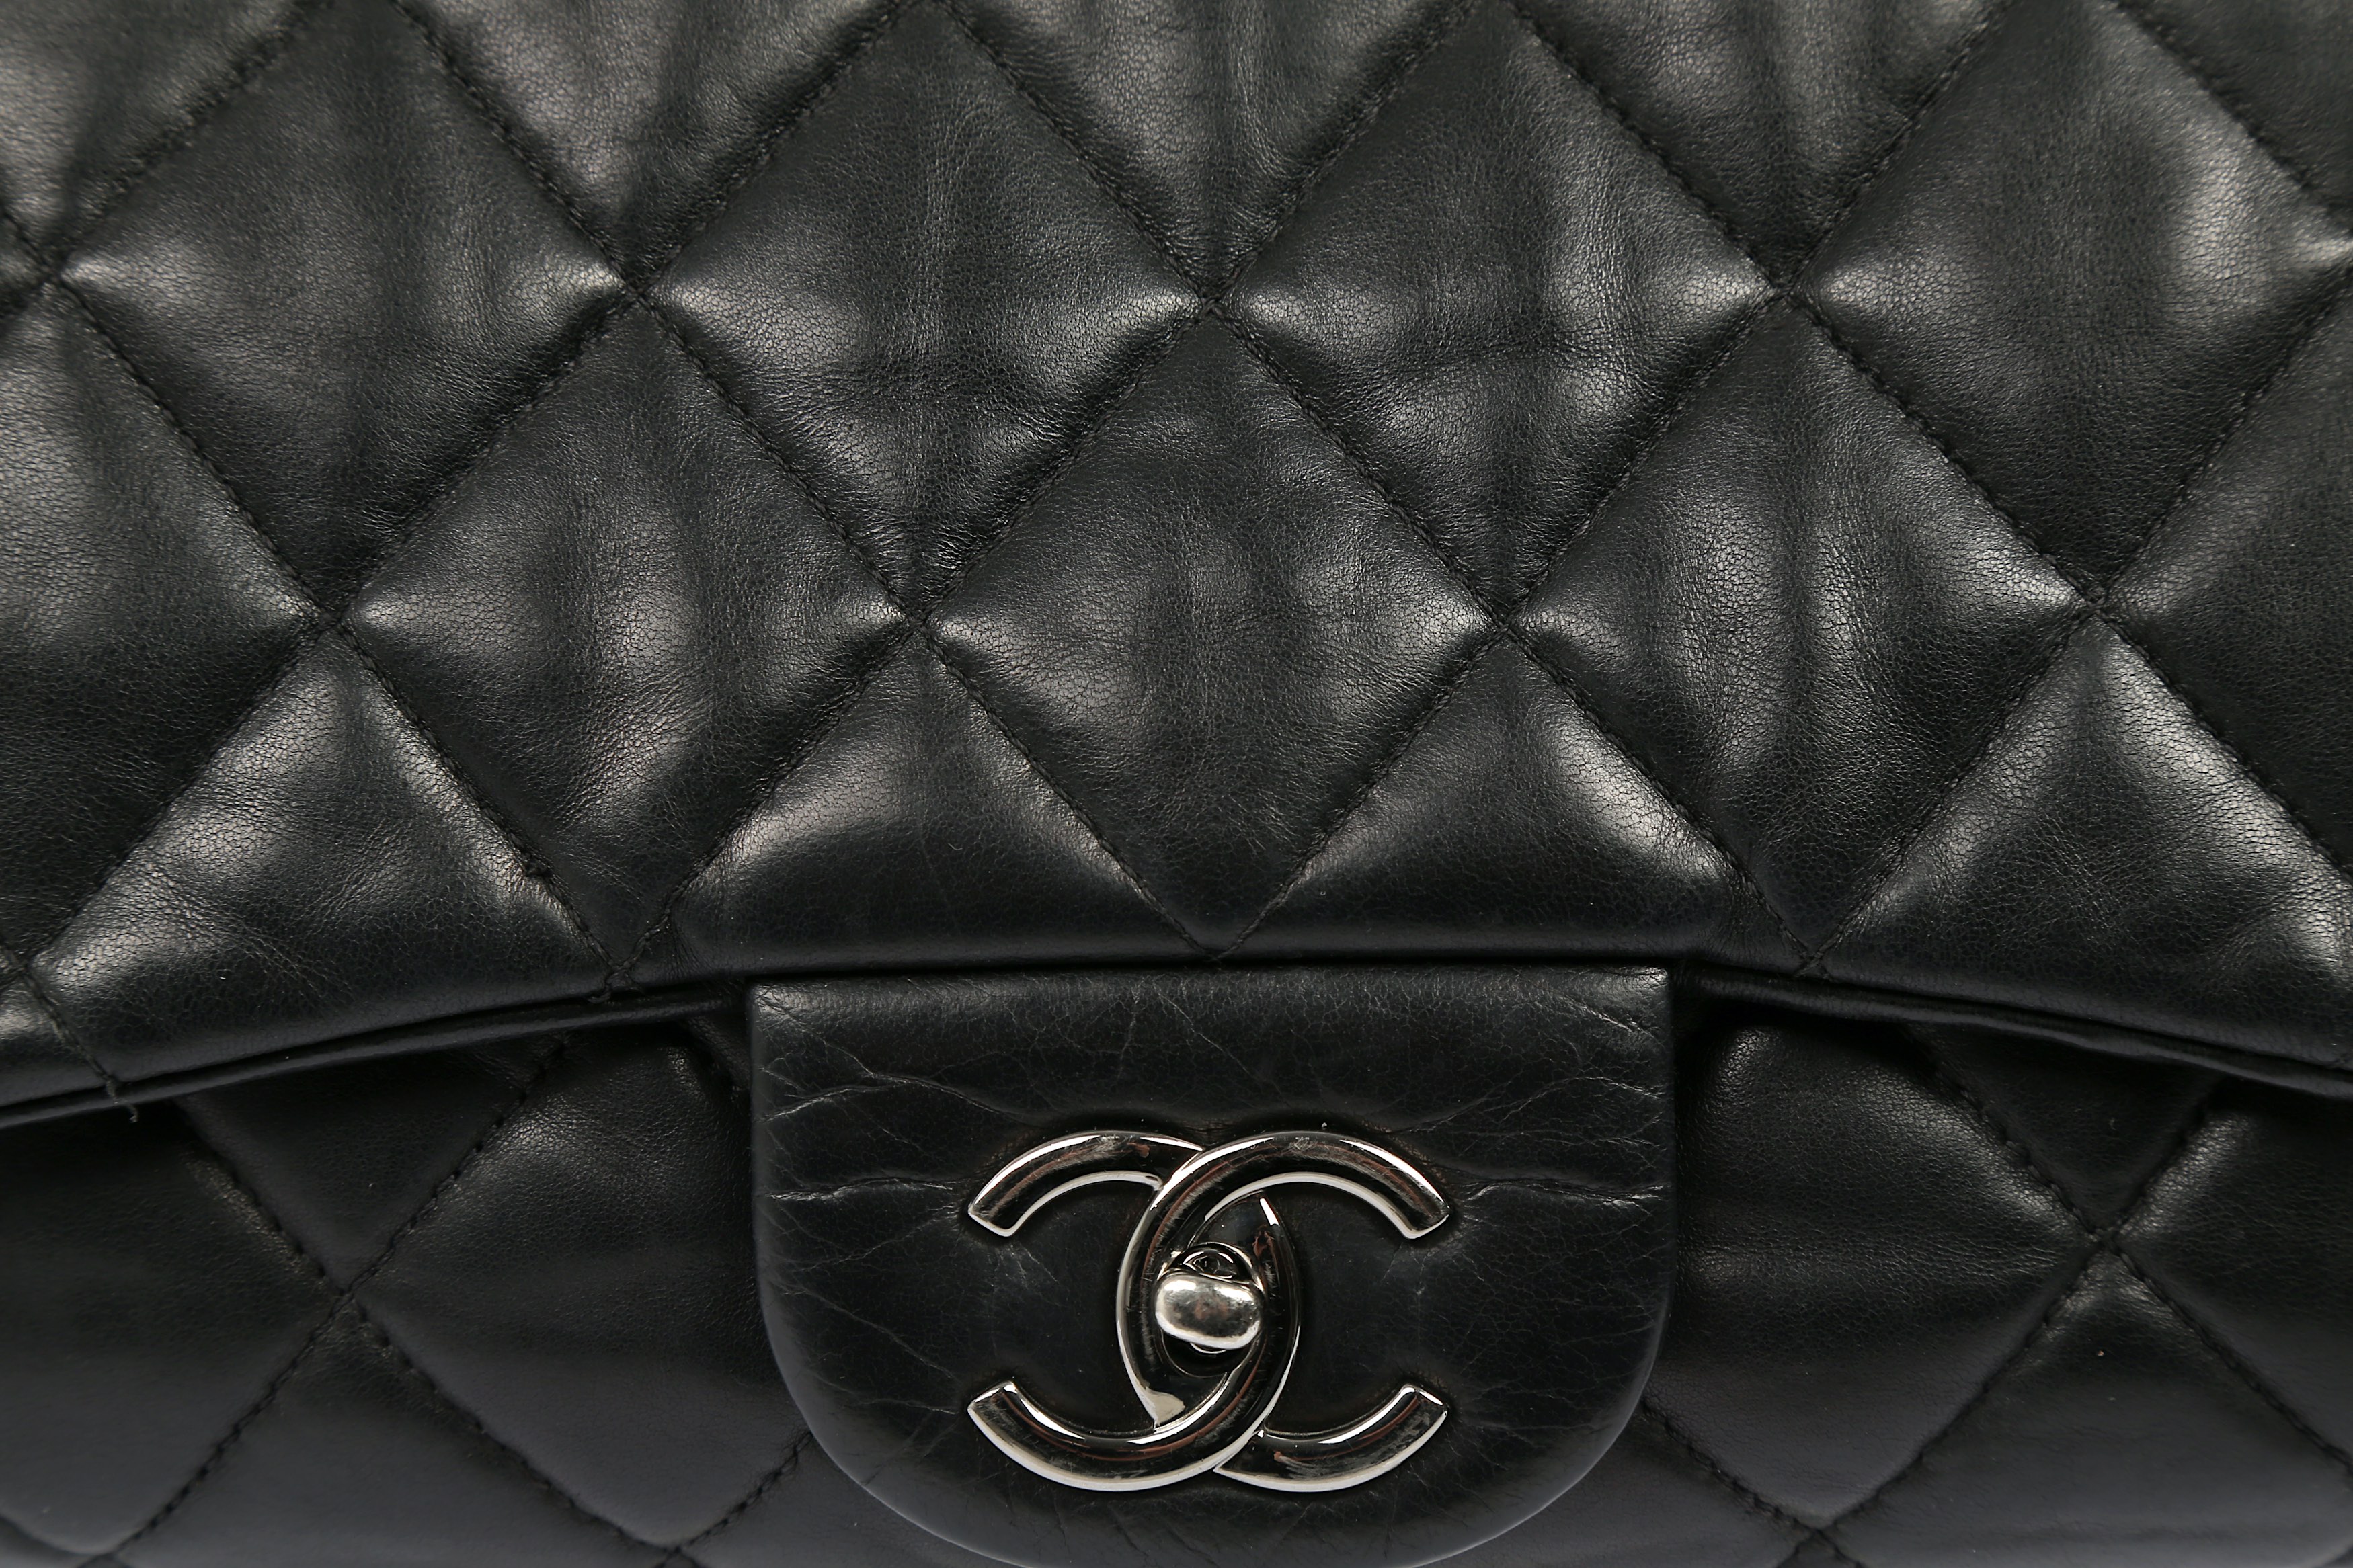 Chanel accordion flap bag - Gem